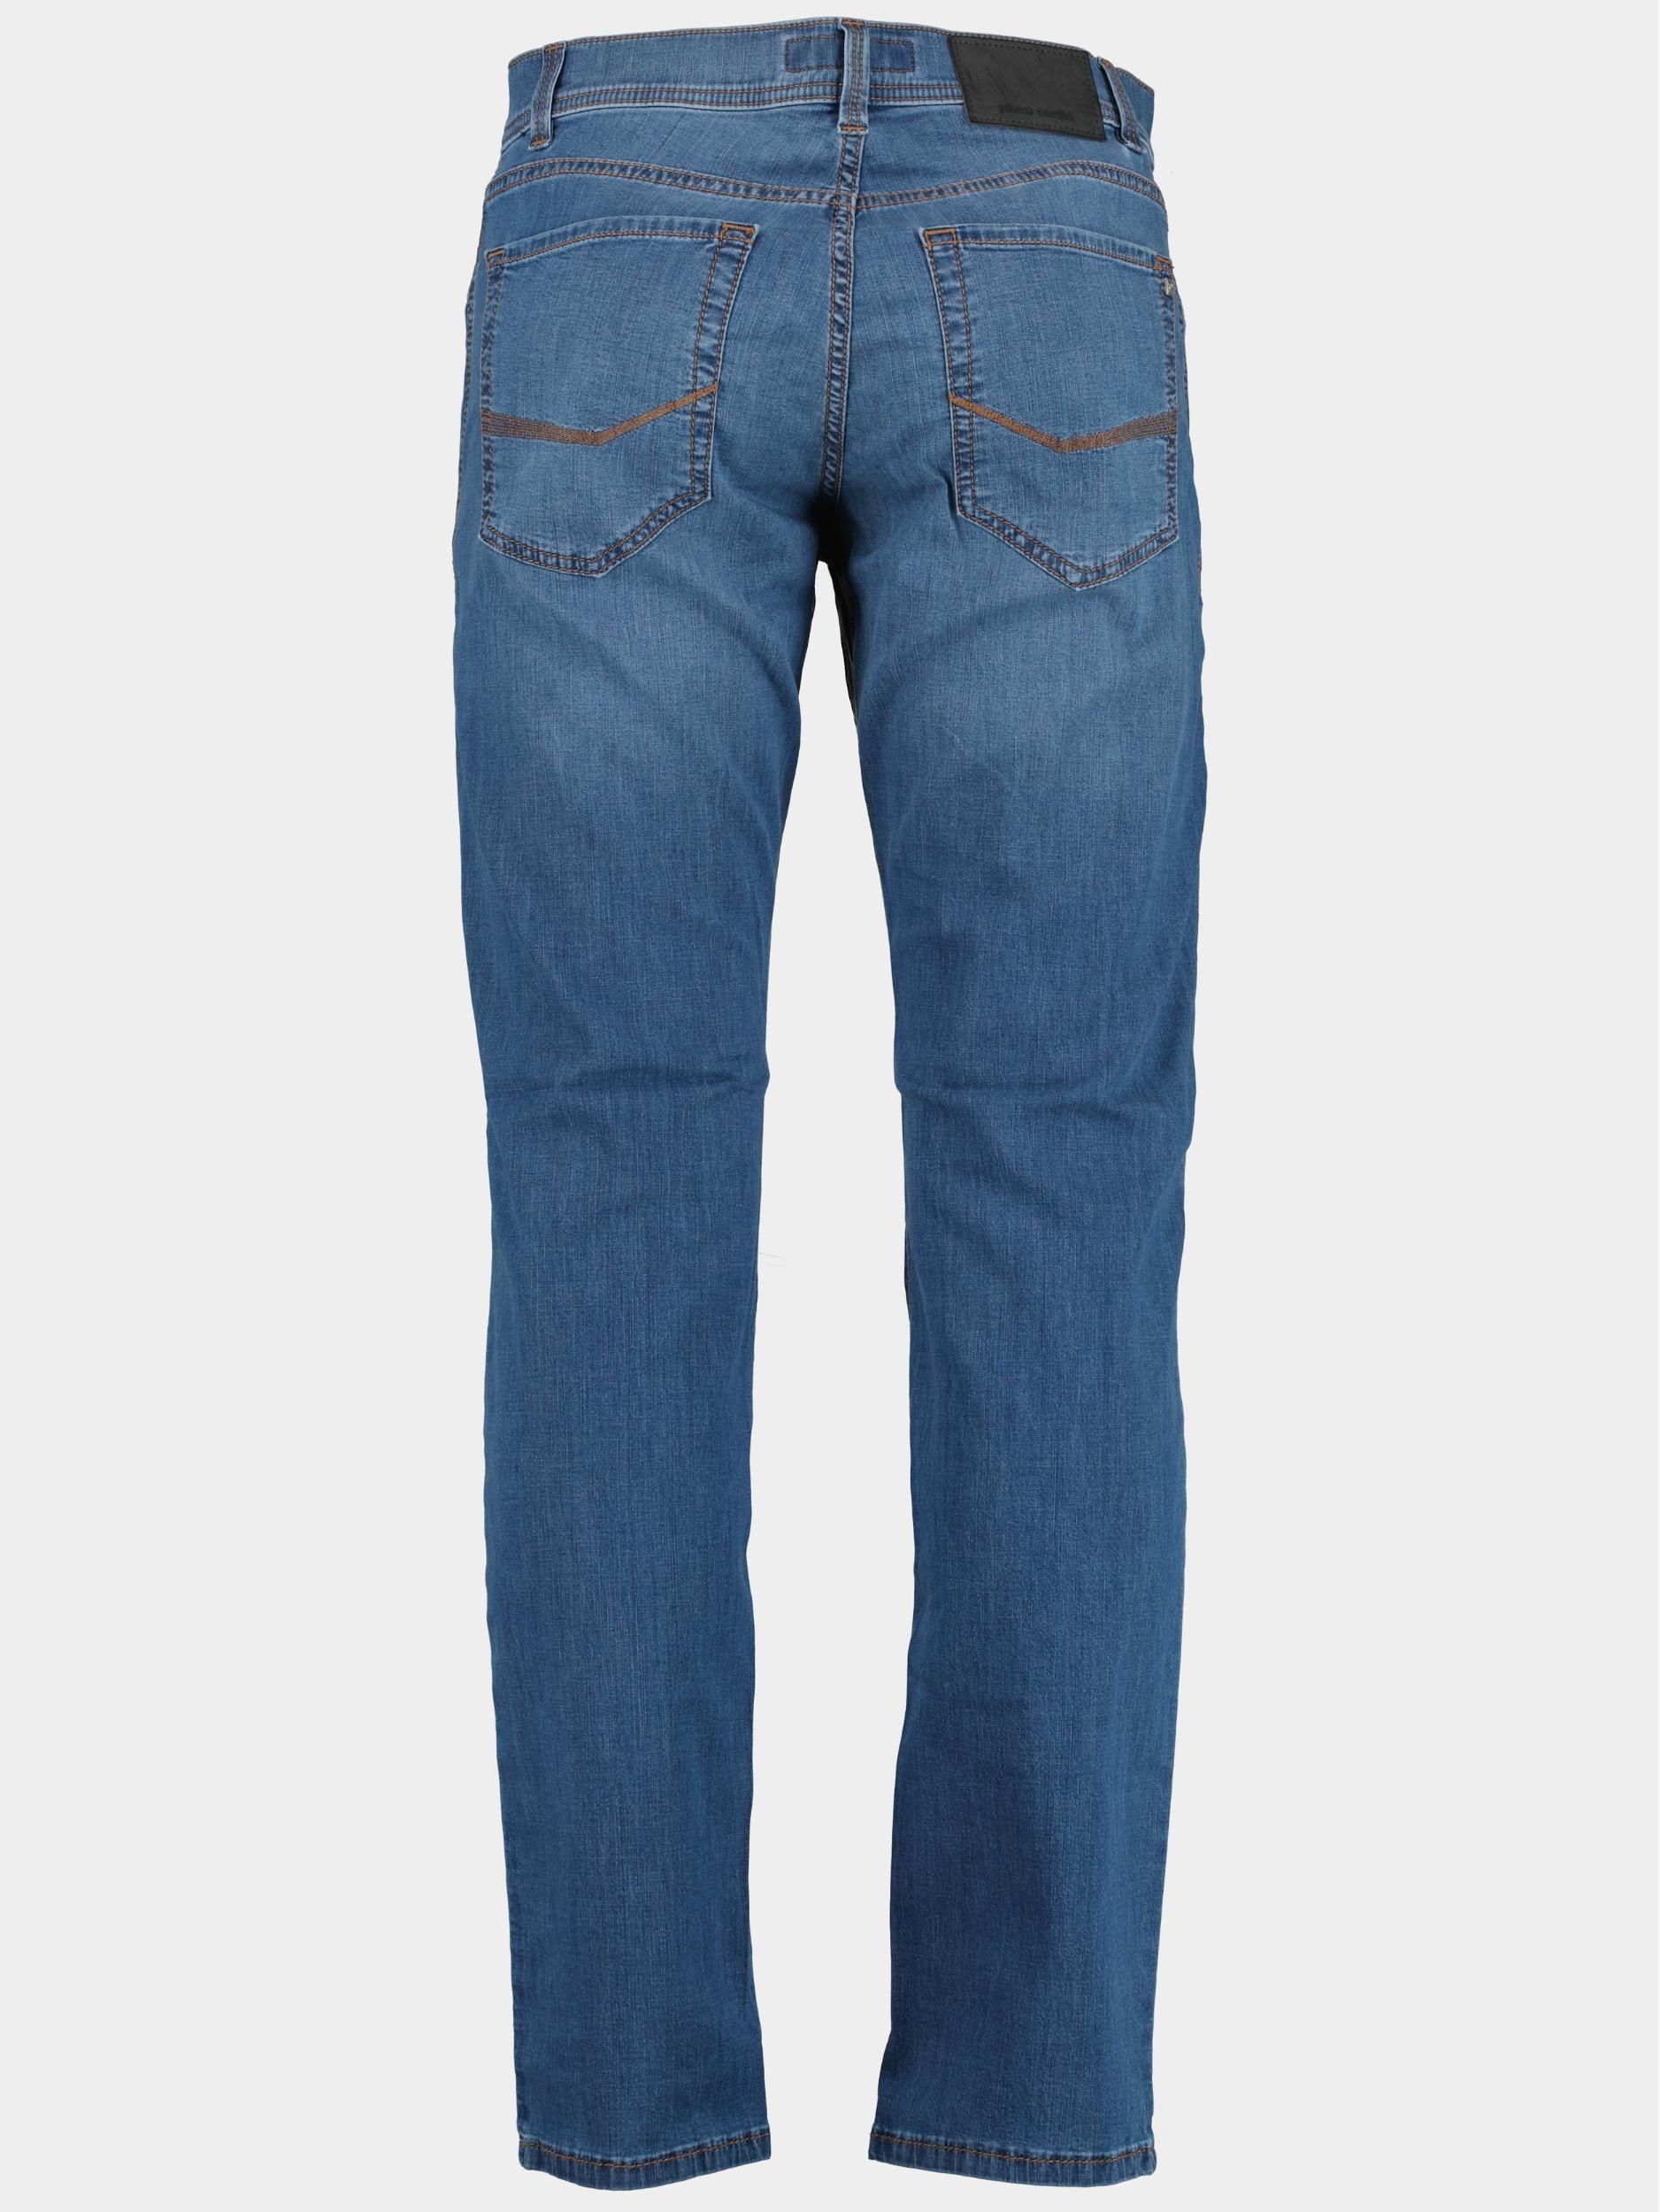 Pierre Cardin 5-Pocket Jeans Blauw  C7 34510.7730/6837